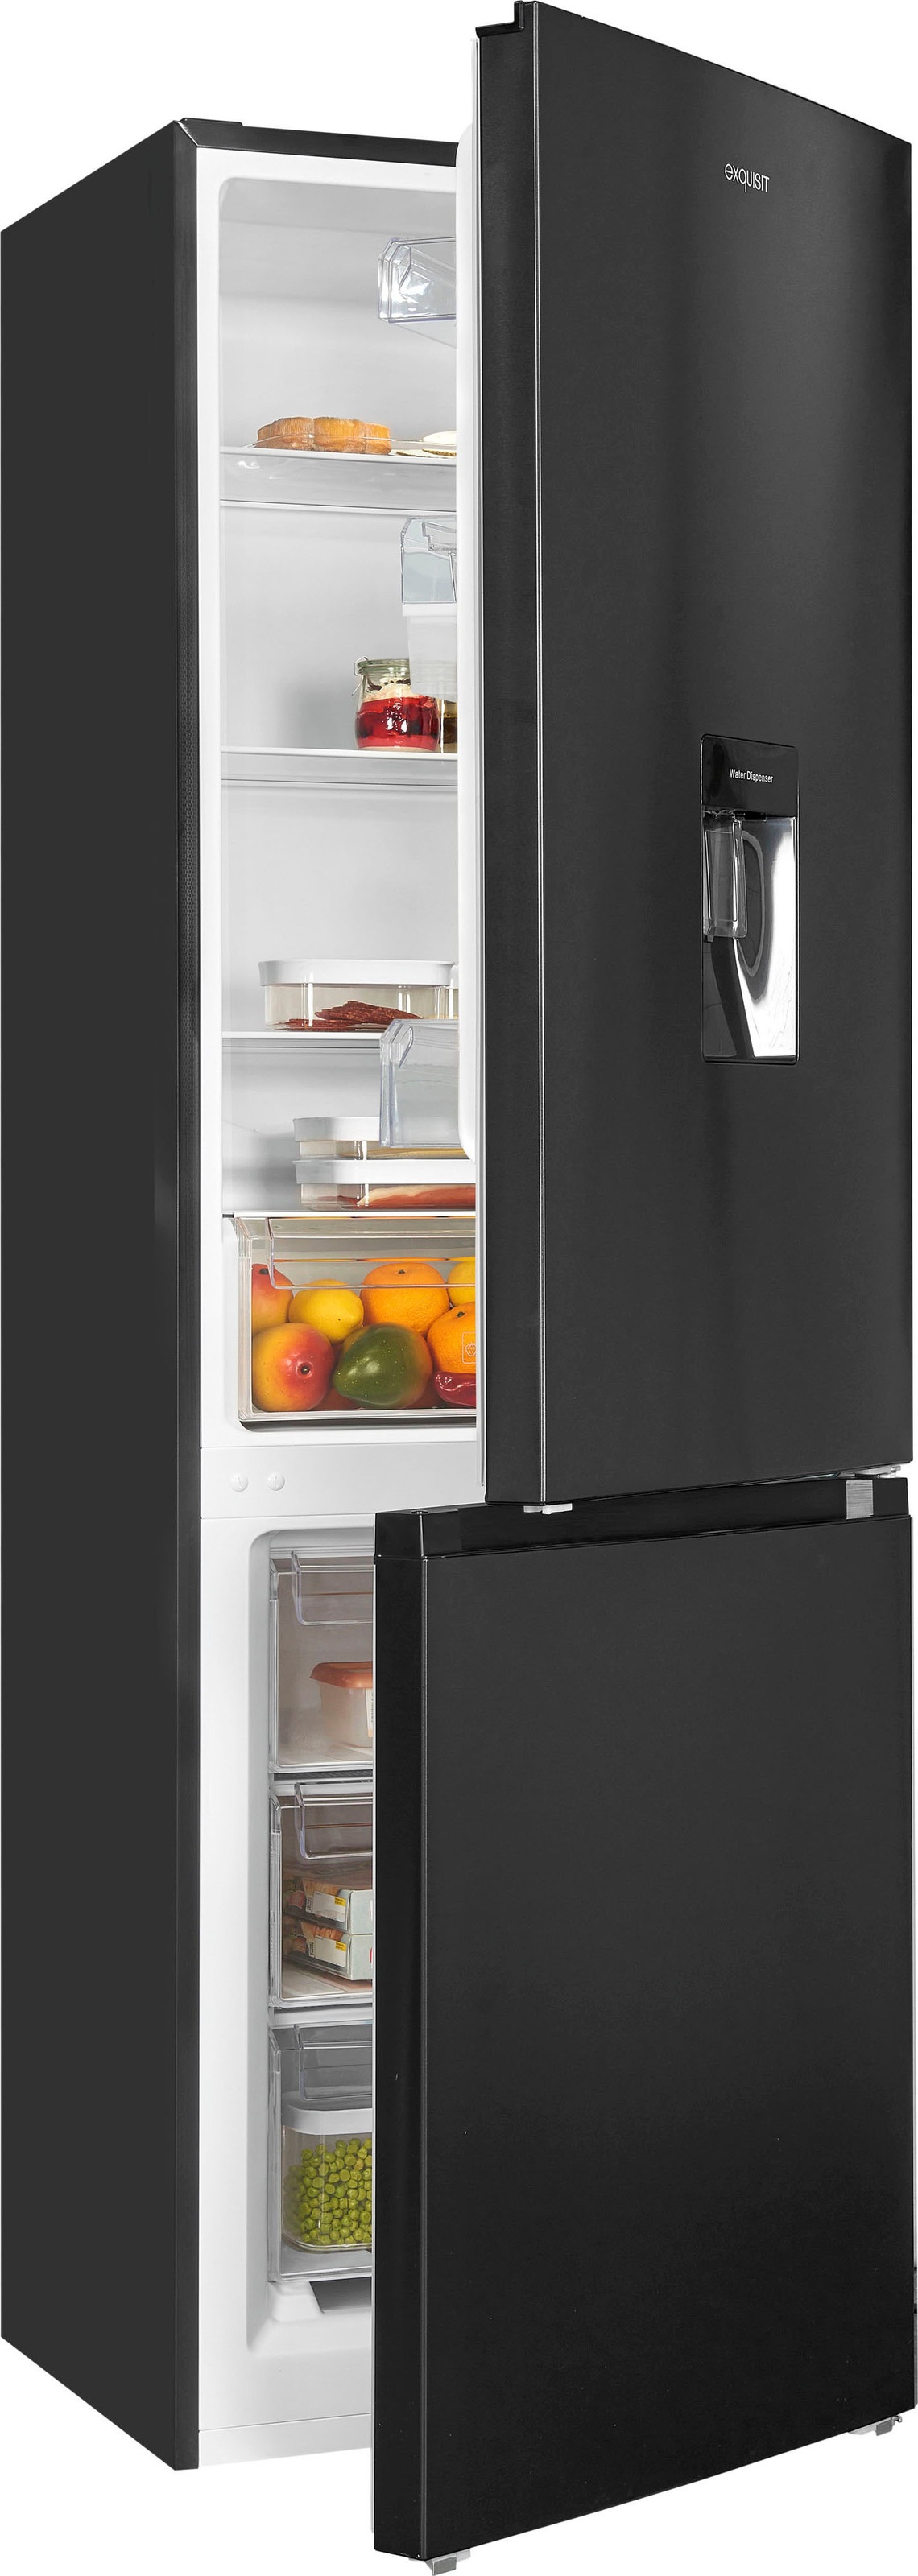 Exquisit Kühlschränke auf Rechnung kaufen ▻ Universal. Jeder hat sein